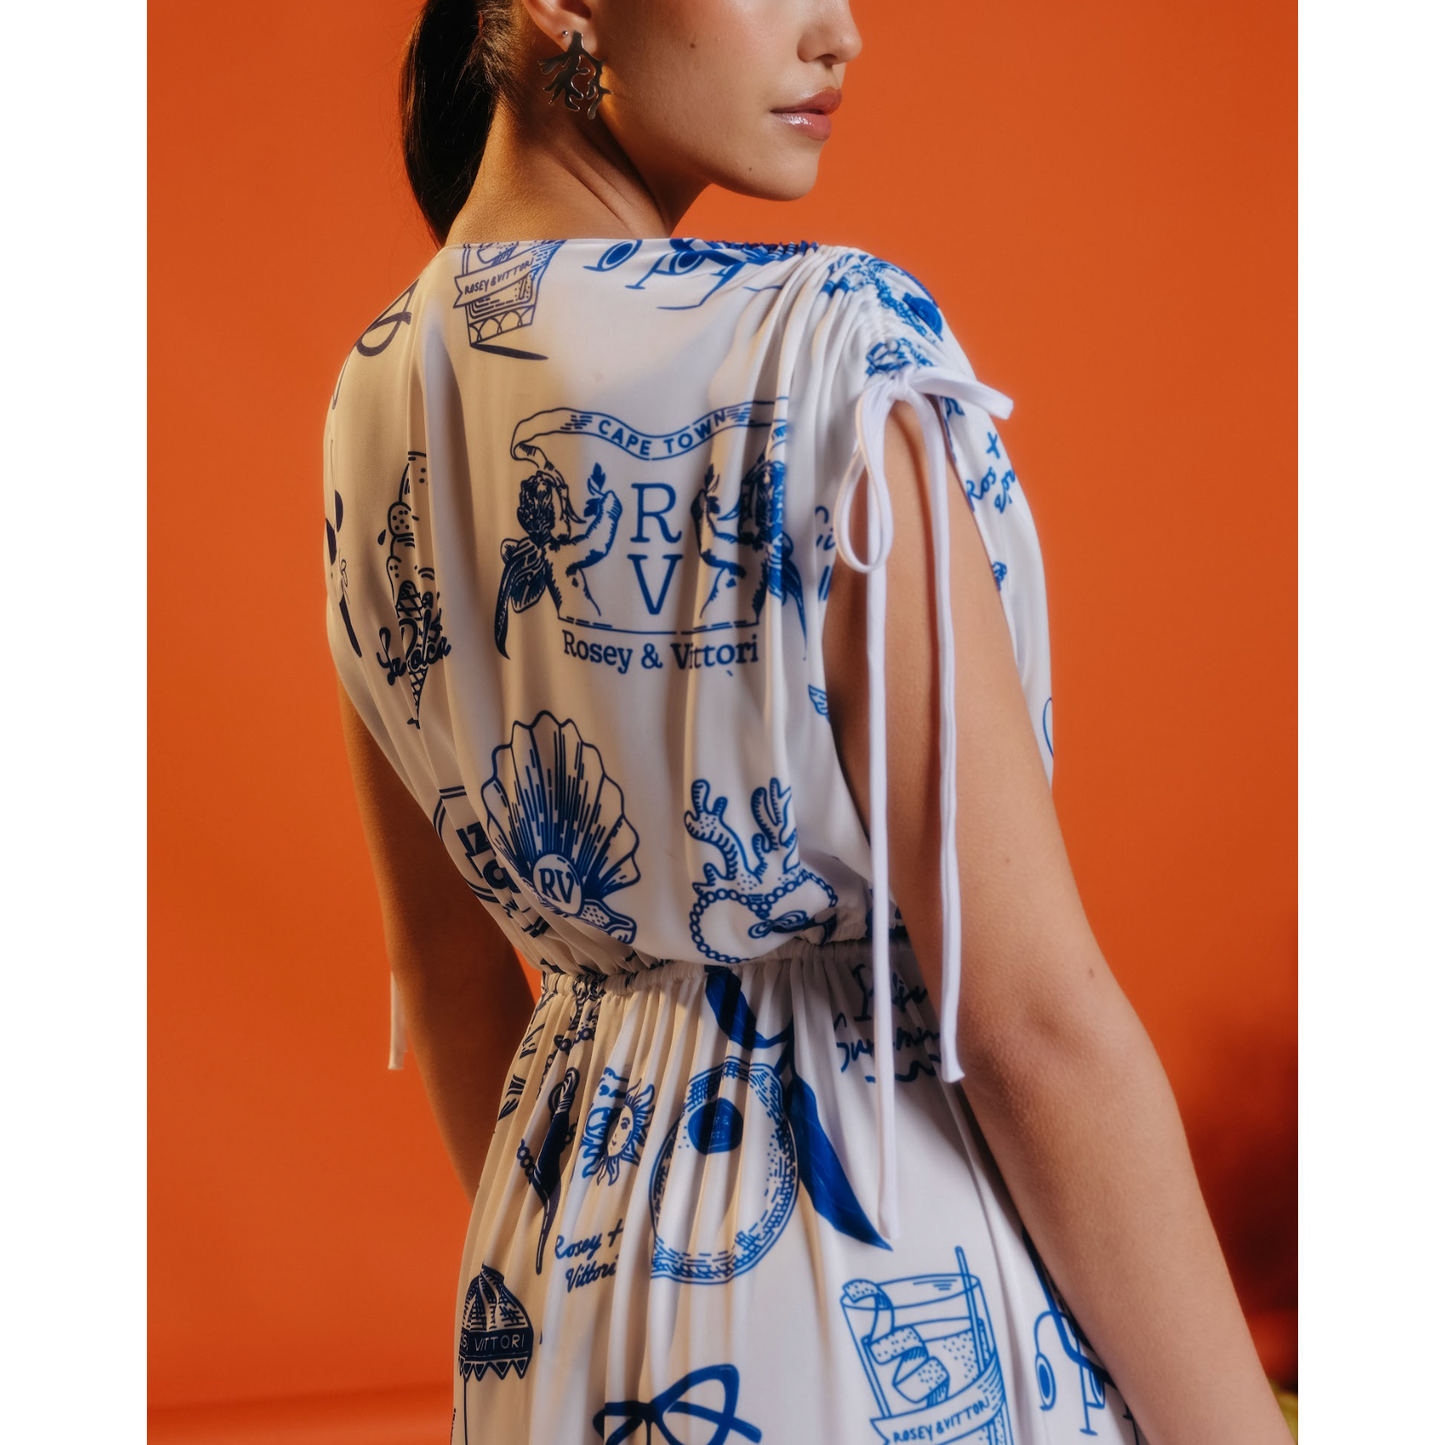 Emilia Cut Out Dress in Blue & White Amalfi Print